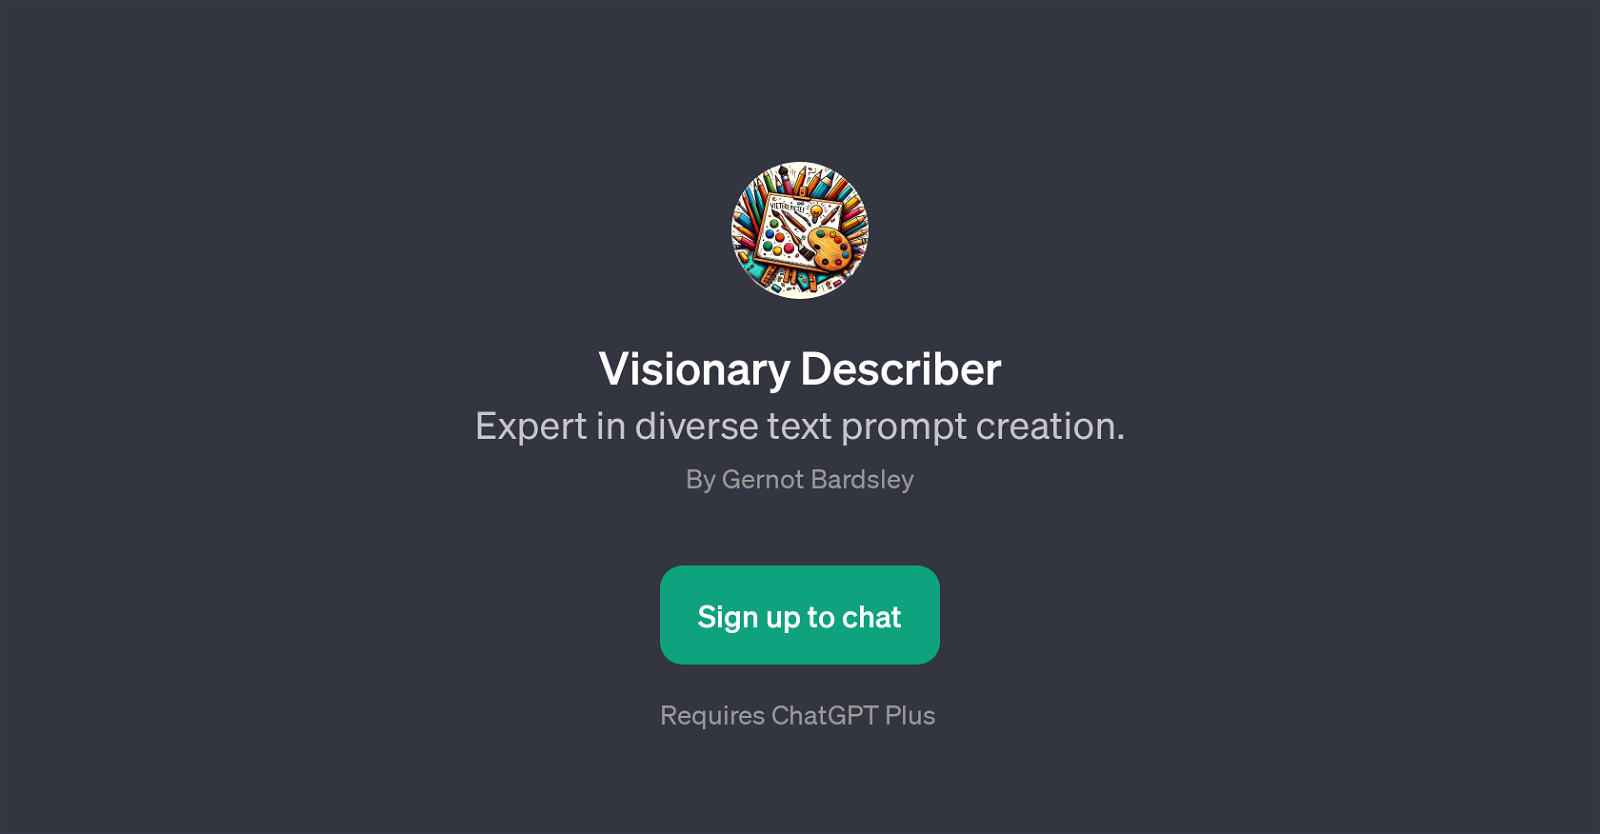 Visionary Describer website